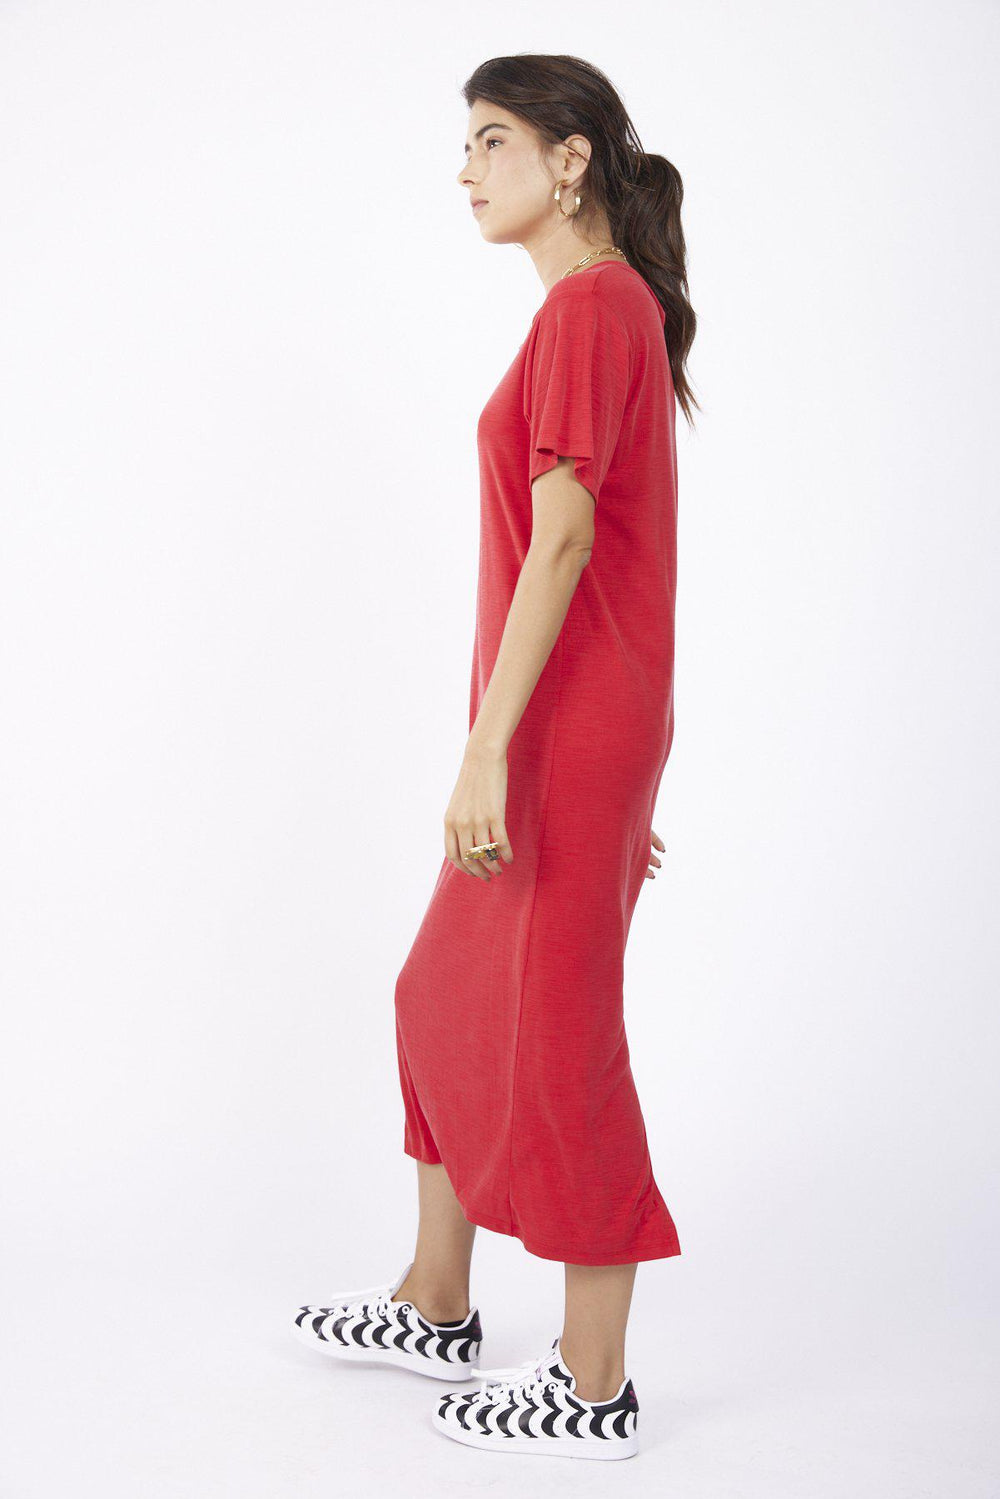 שמלת ברלין בצבע אדום - Razili Studio